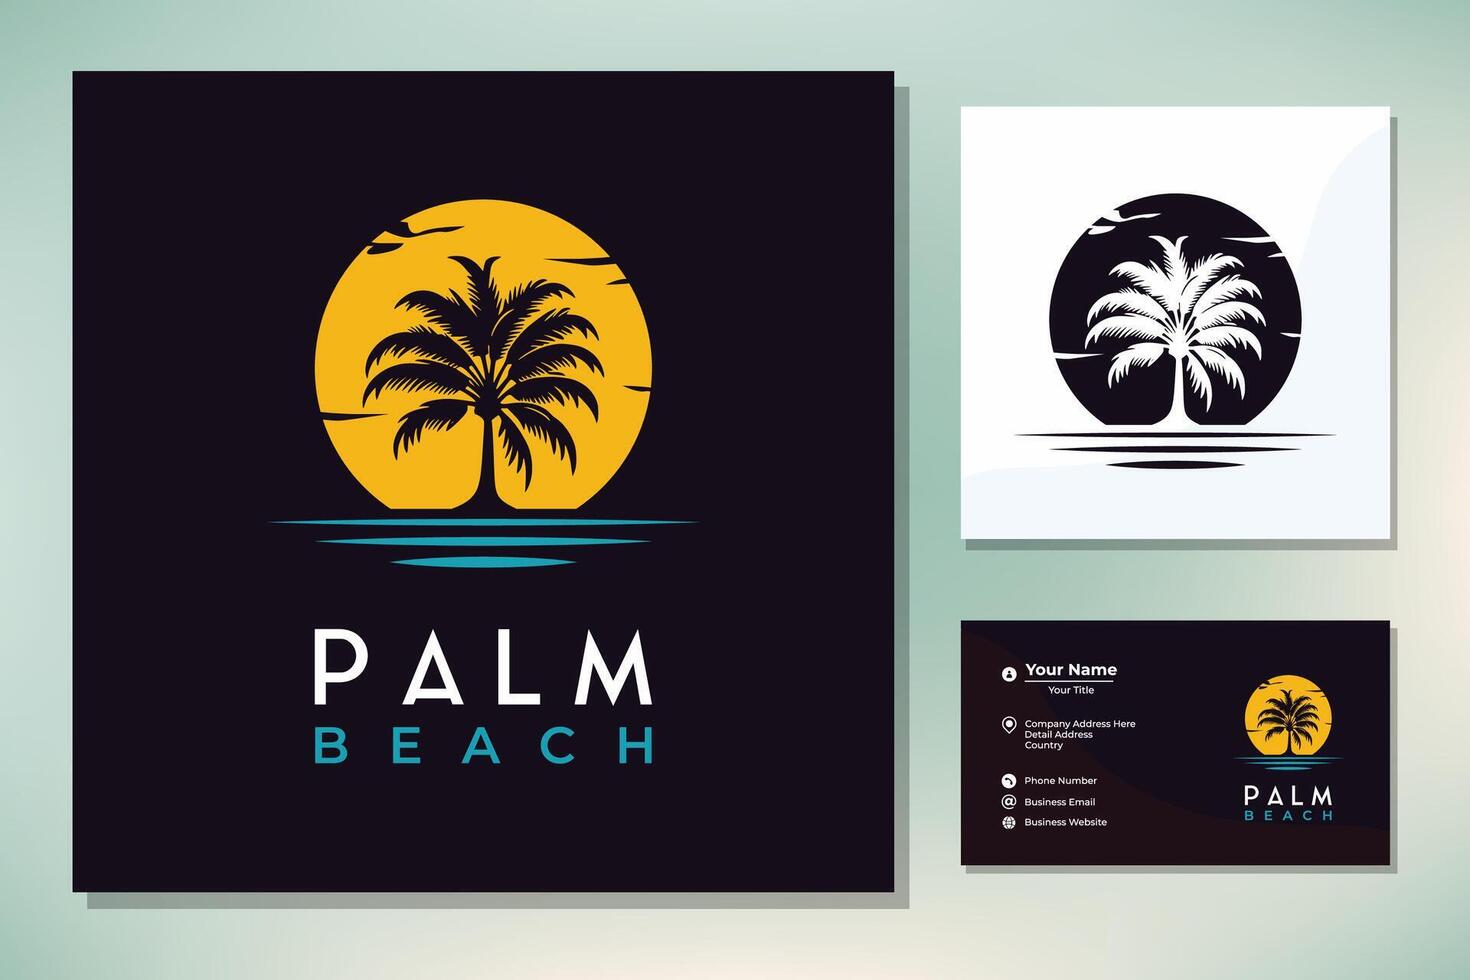 sagoma della spiaggia della palma per il design del logo del viaggio delle vacanze del ristorante dell'hotel vettore